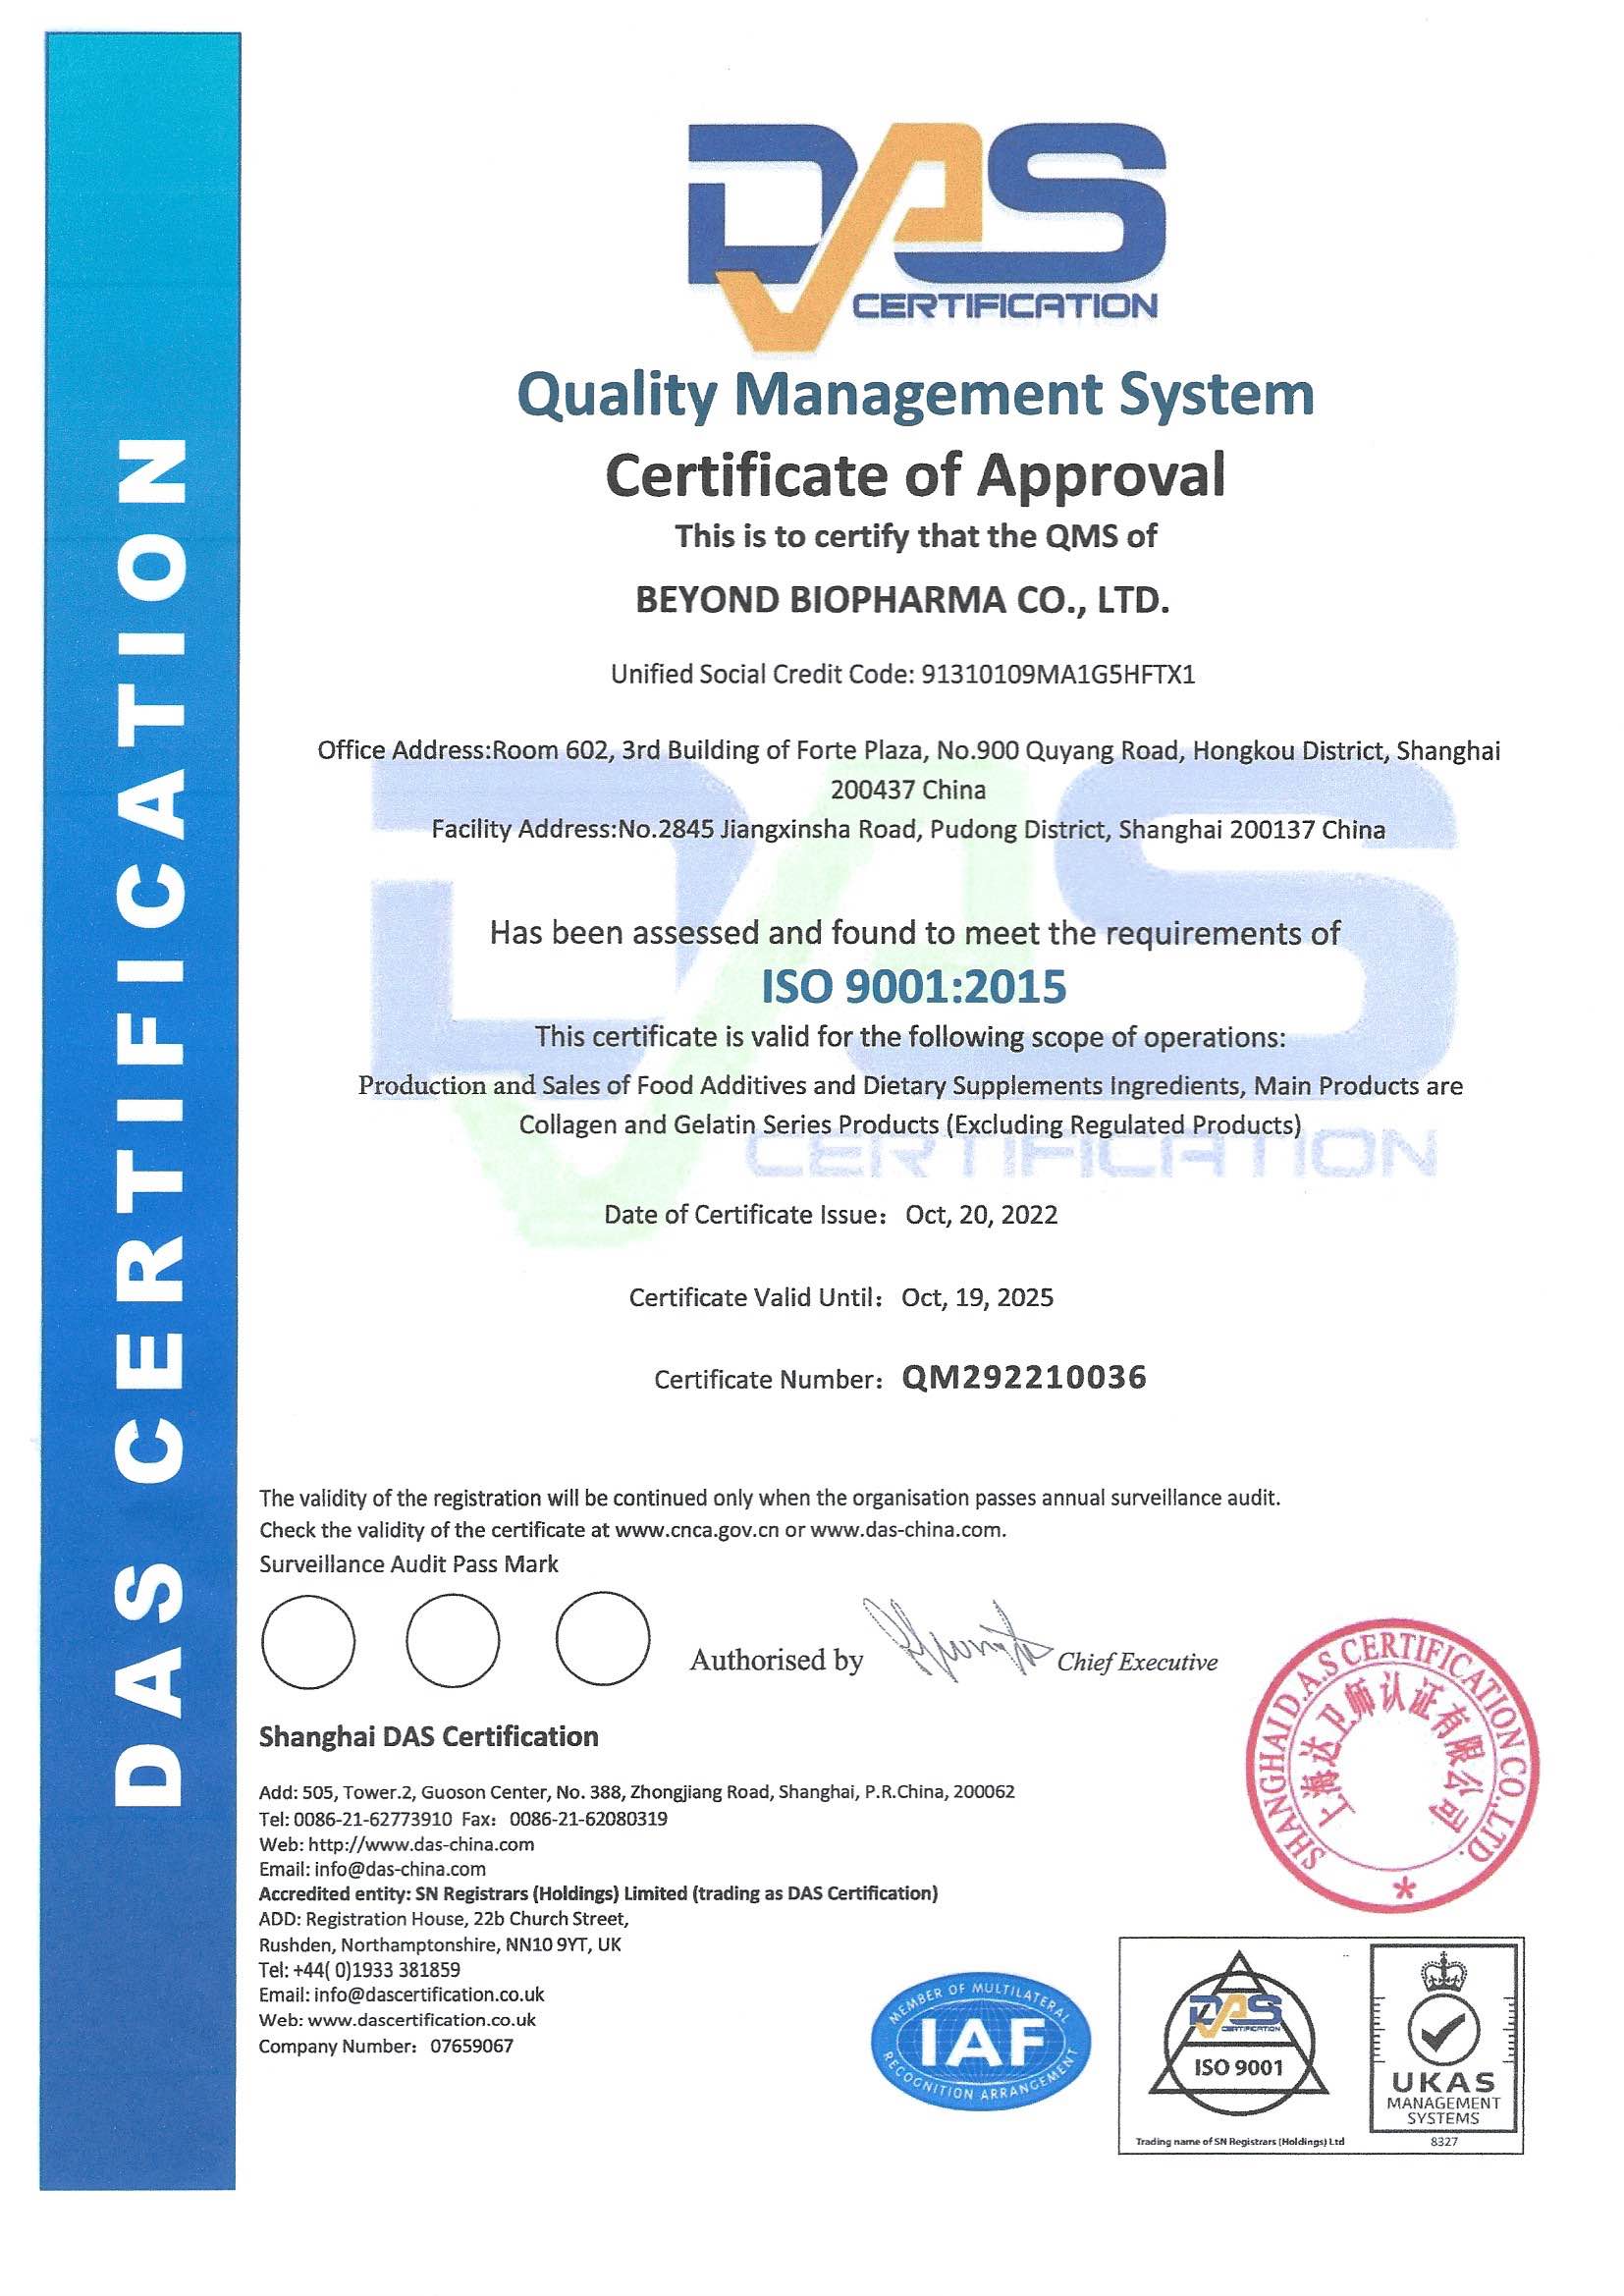 אנו מברכים את החברה שלנו בהצלחה לשדרג את תעודת הסמכת מערכת ניהול האיכות ISO 9001:2015